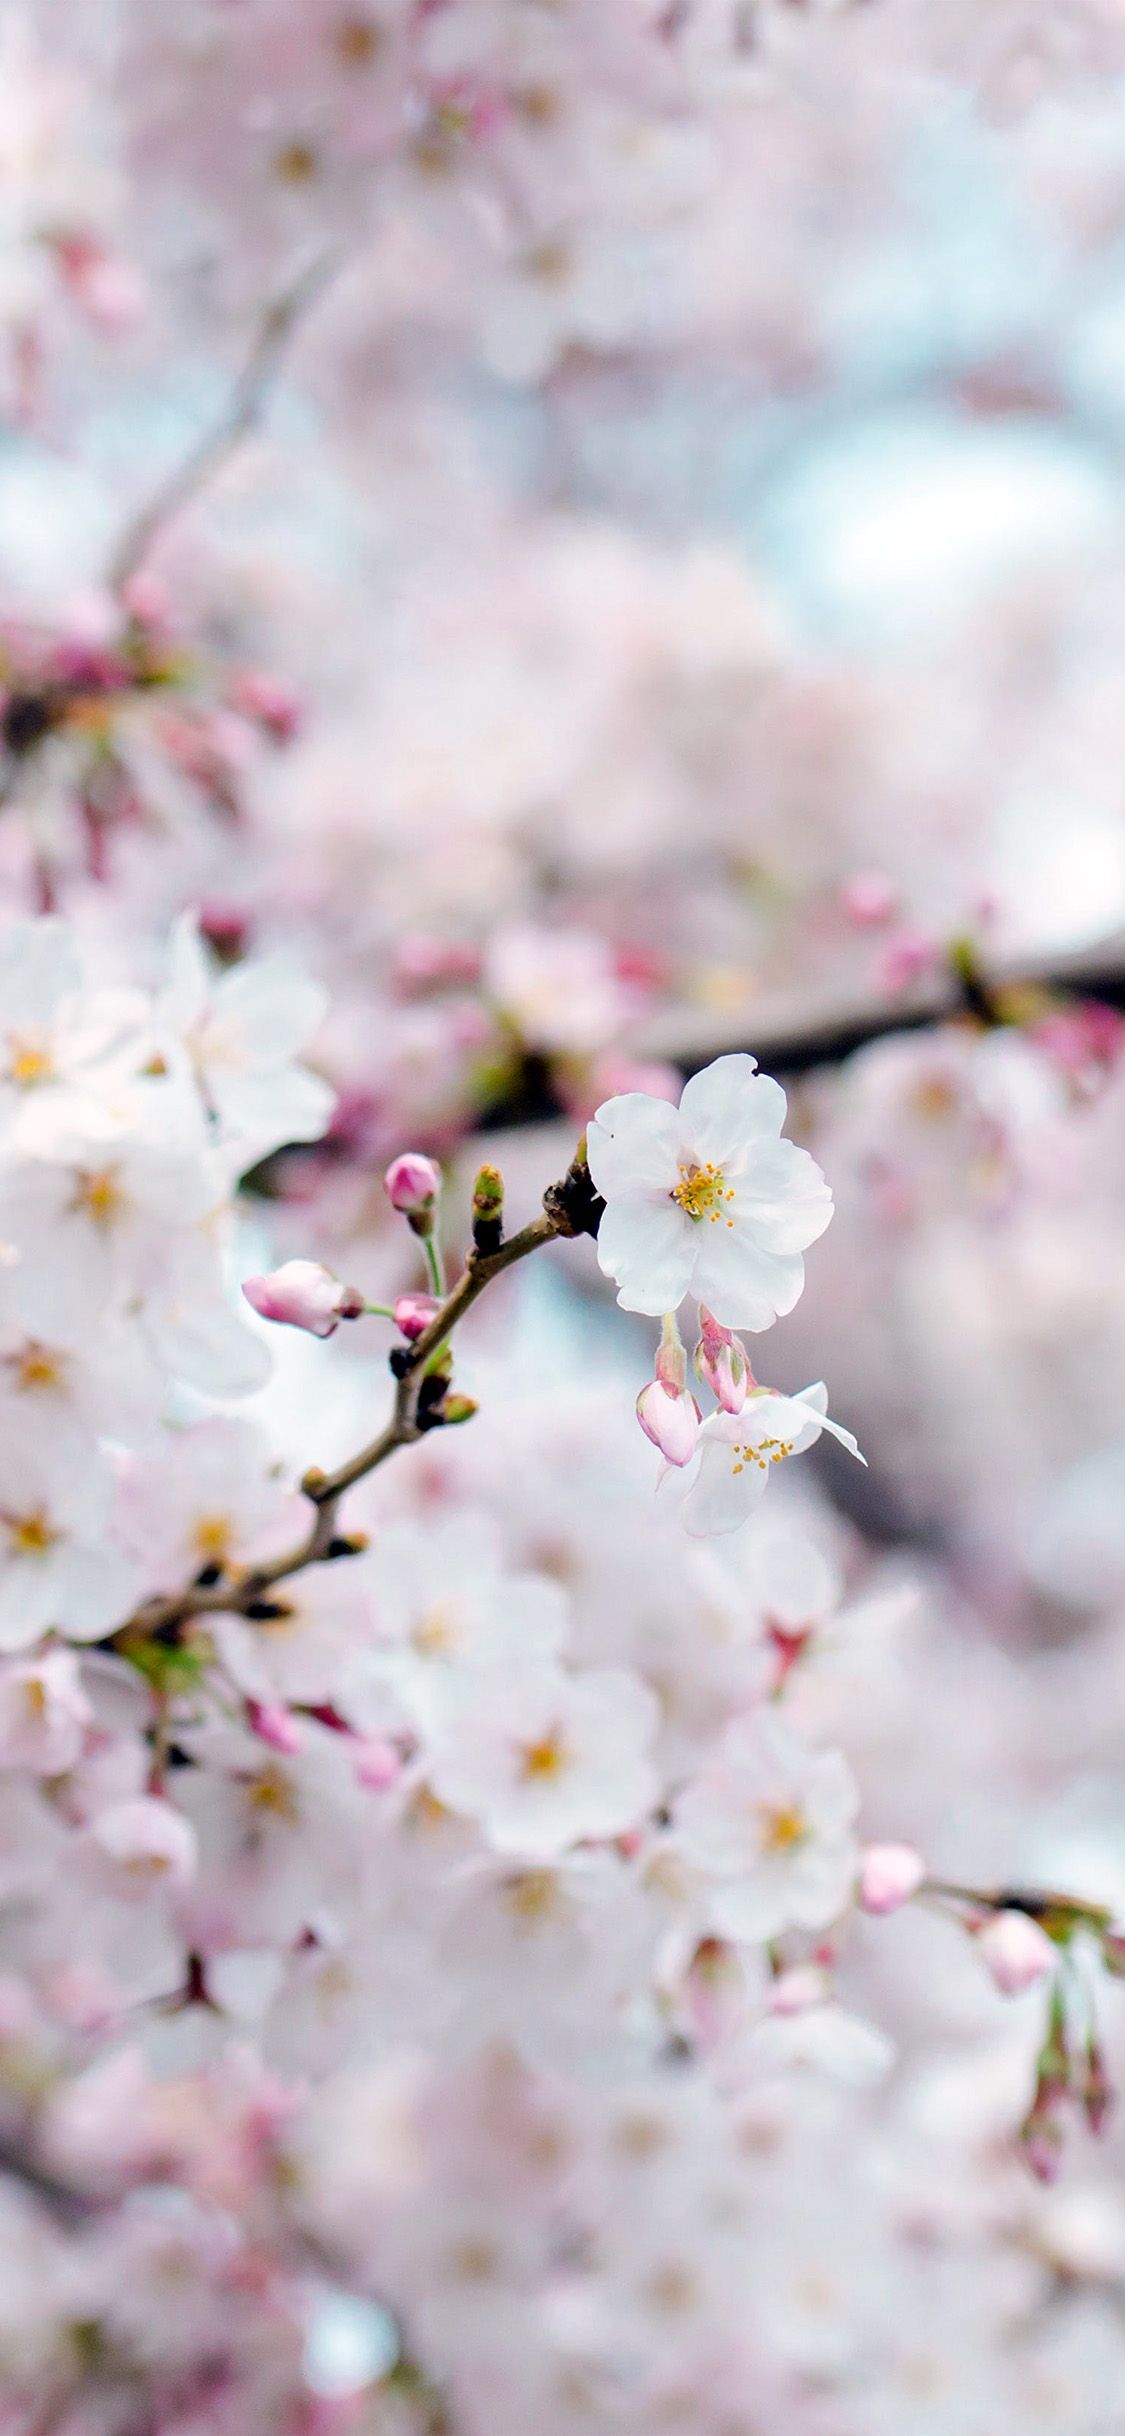 iPhoneX wallpaper: cherry blossom flower spring tree bokeh